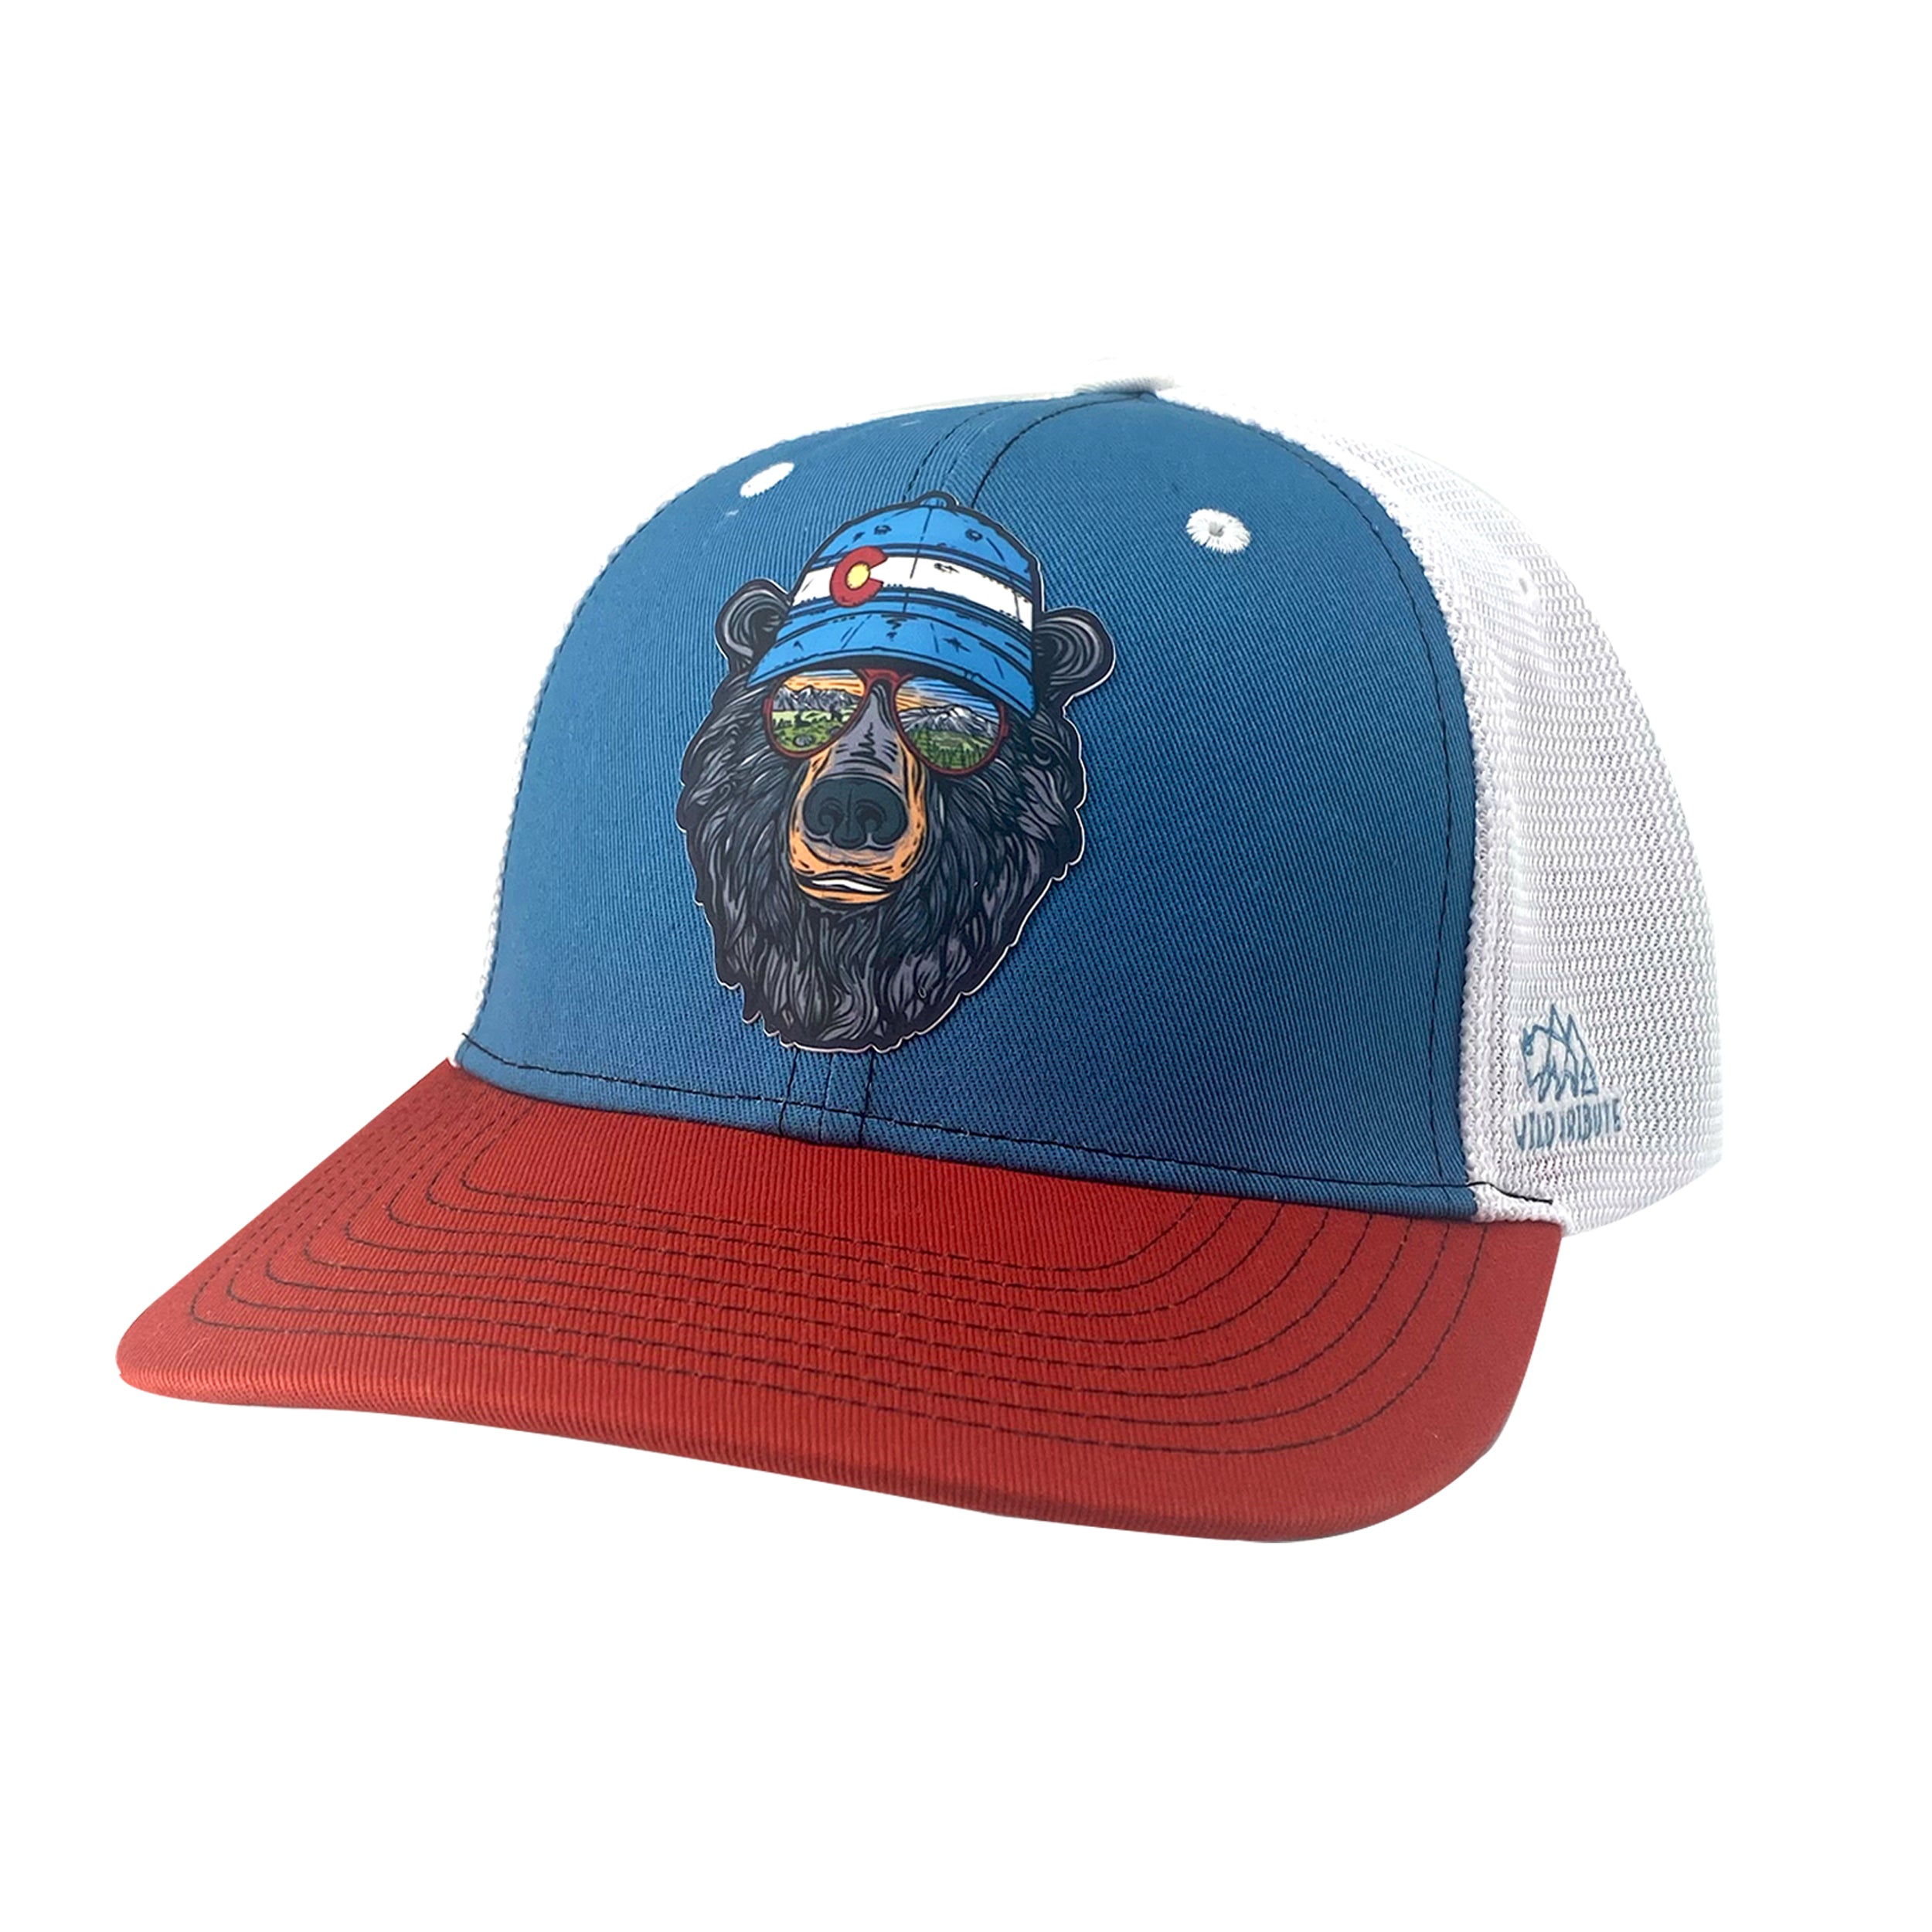 Miami Vice Colorado Bear Trucker Hat